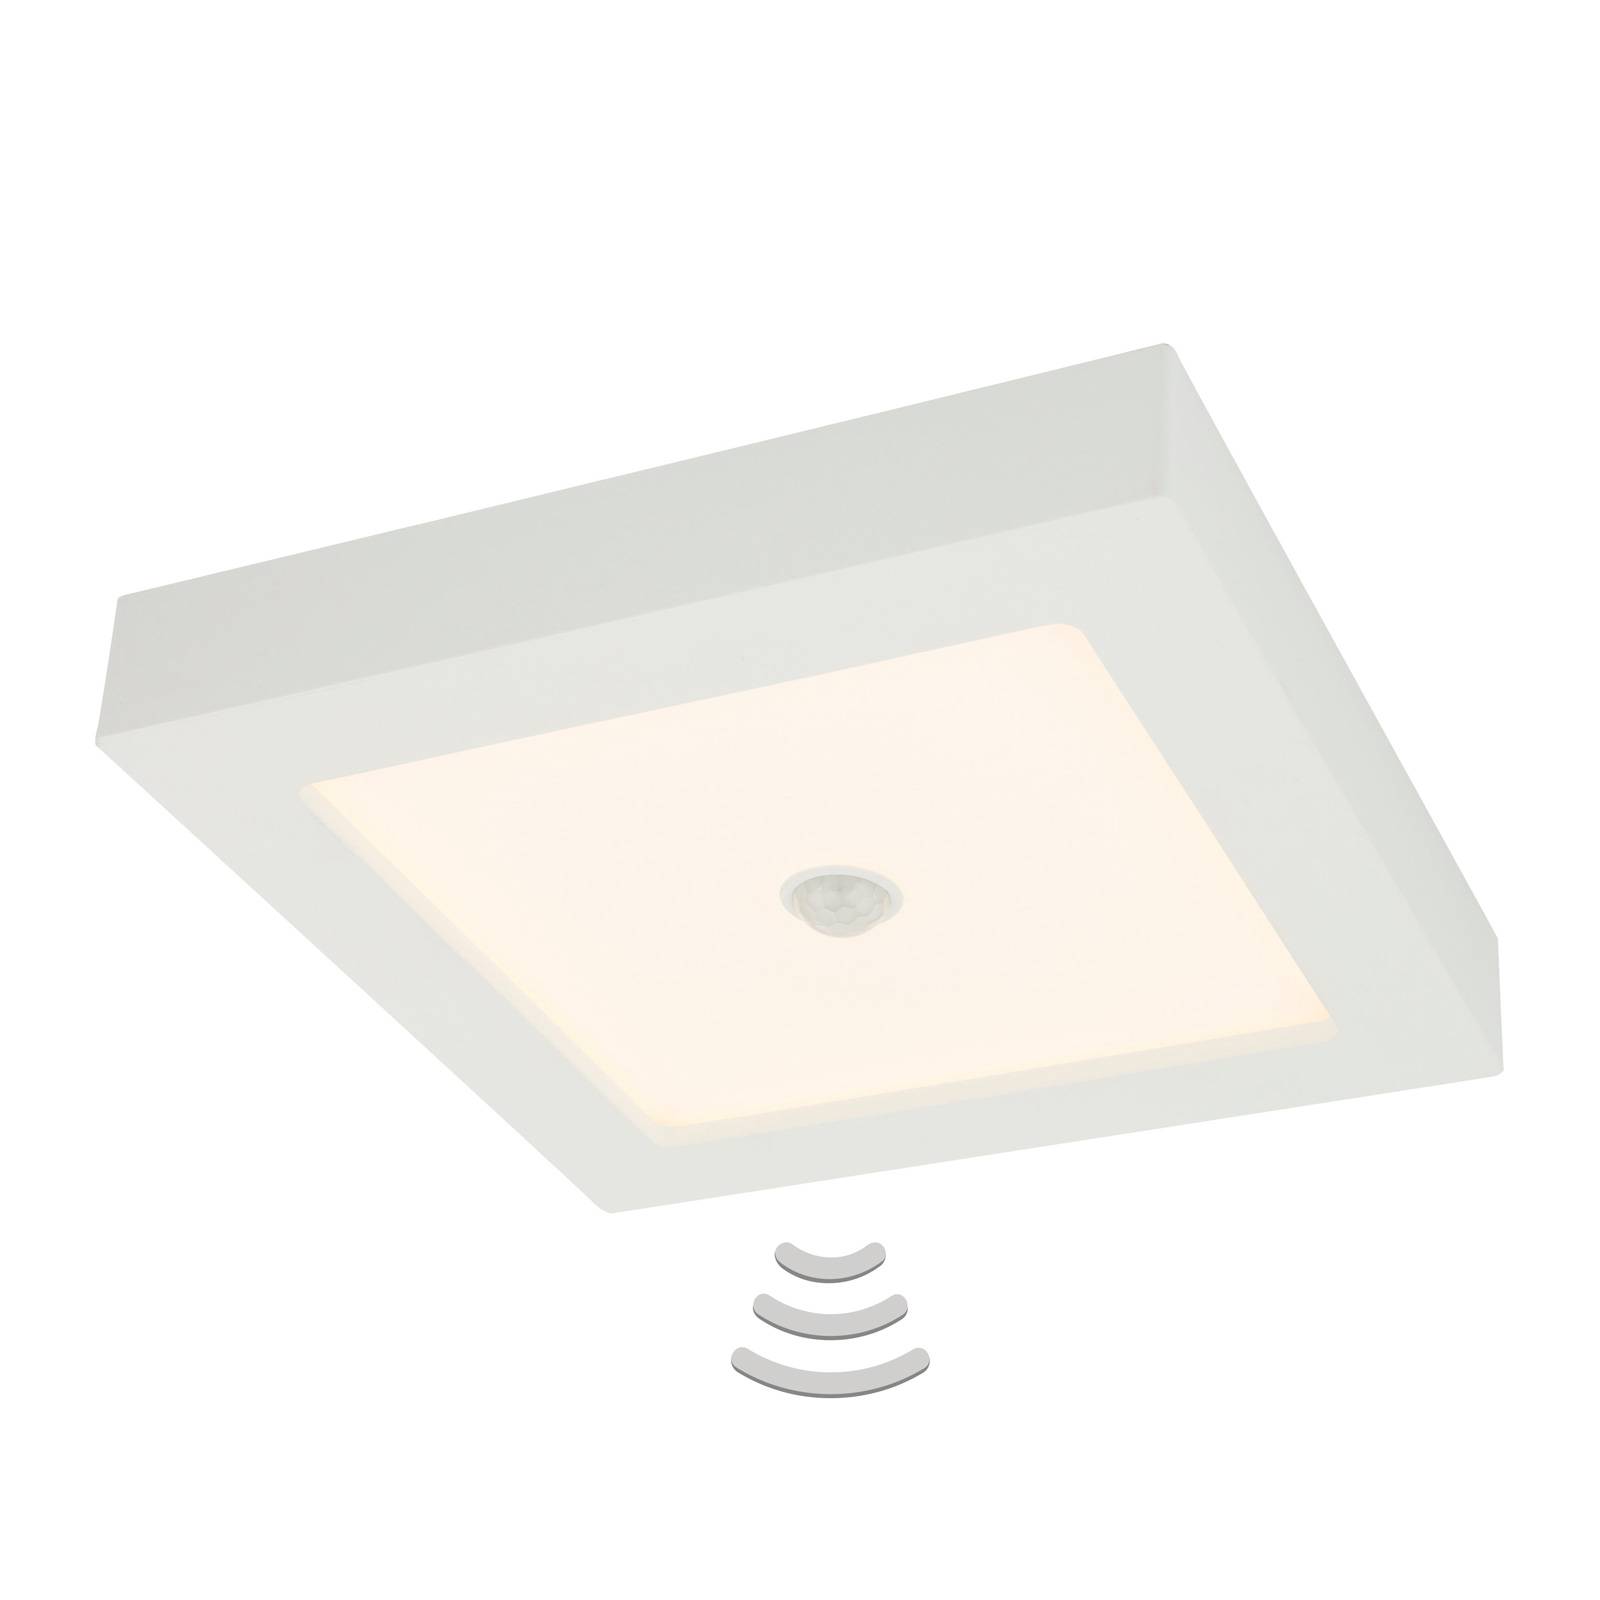 Lampa sufitowa LED Svenja 18 W z czujnikiem ruchu